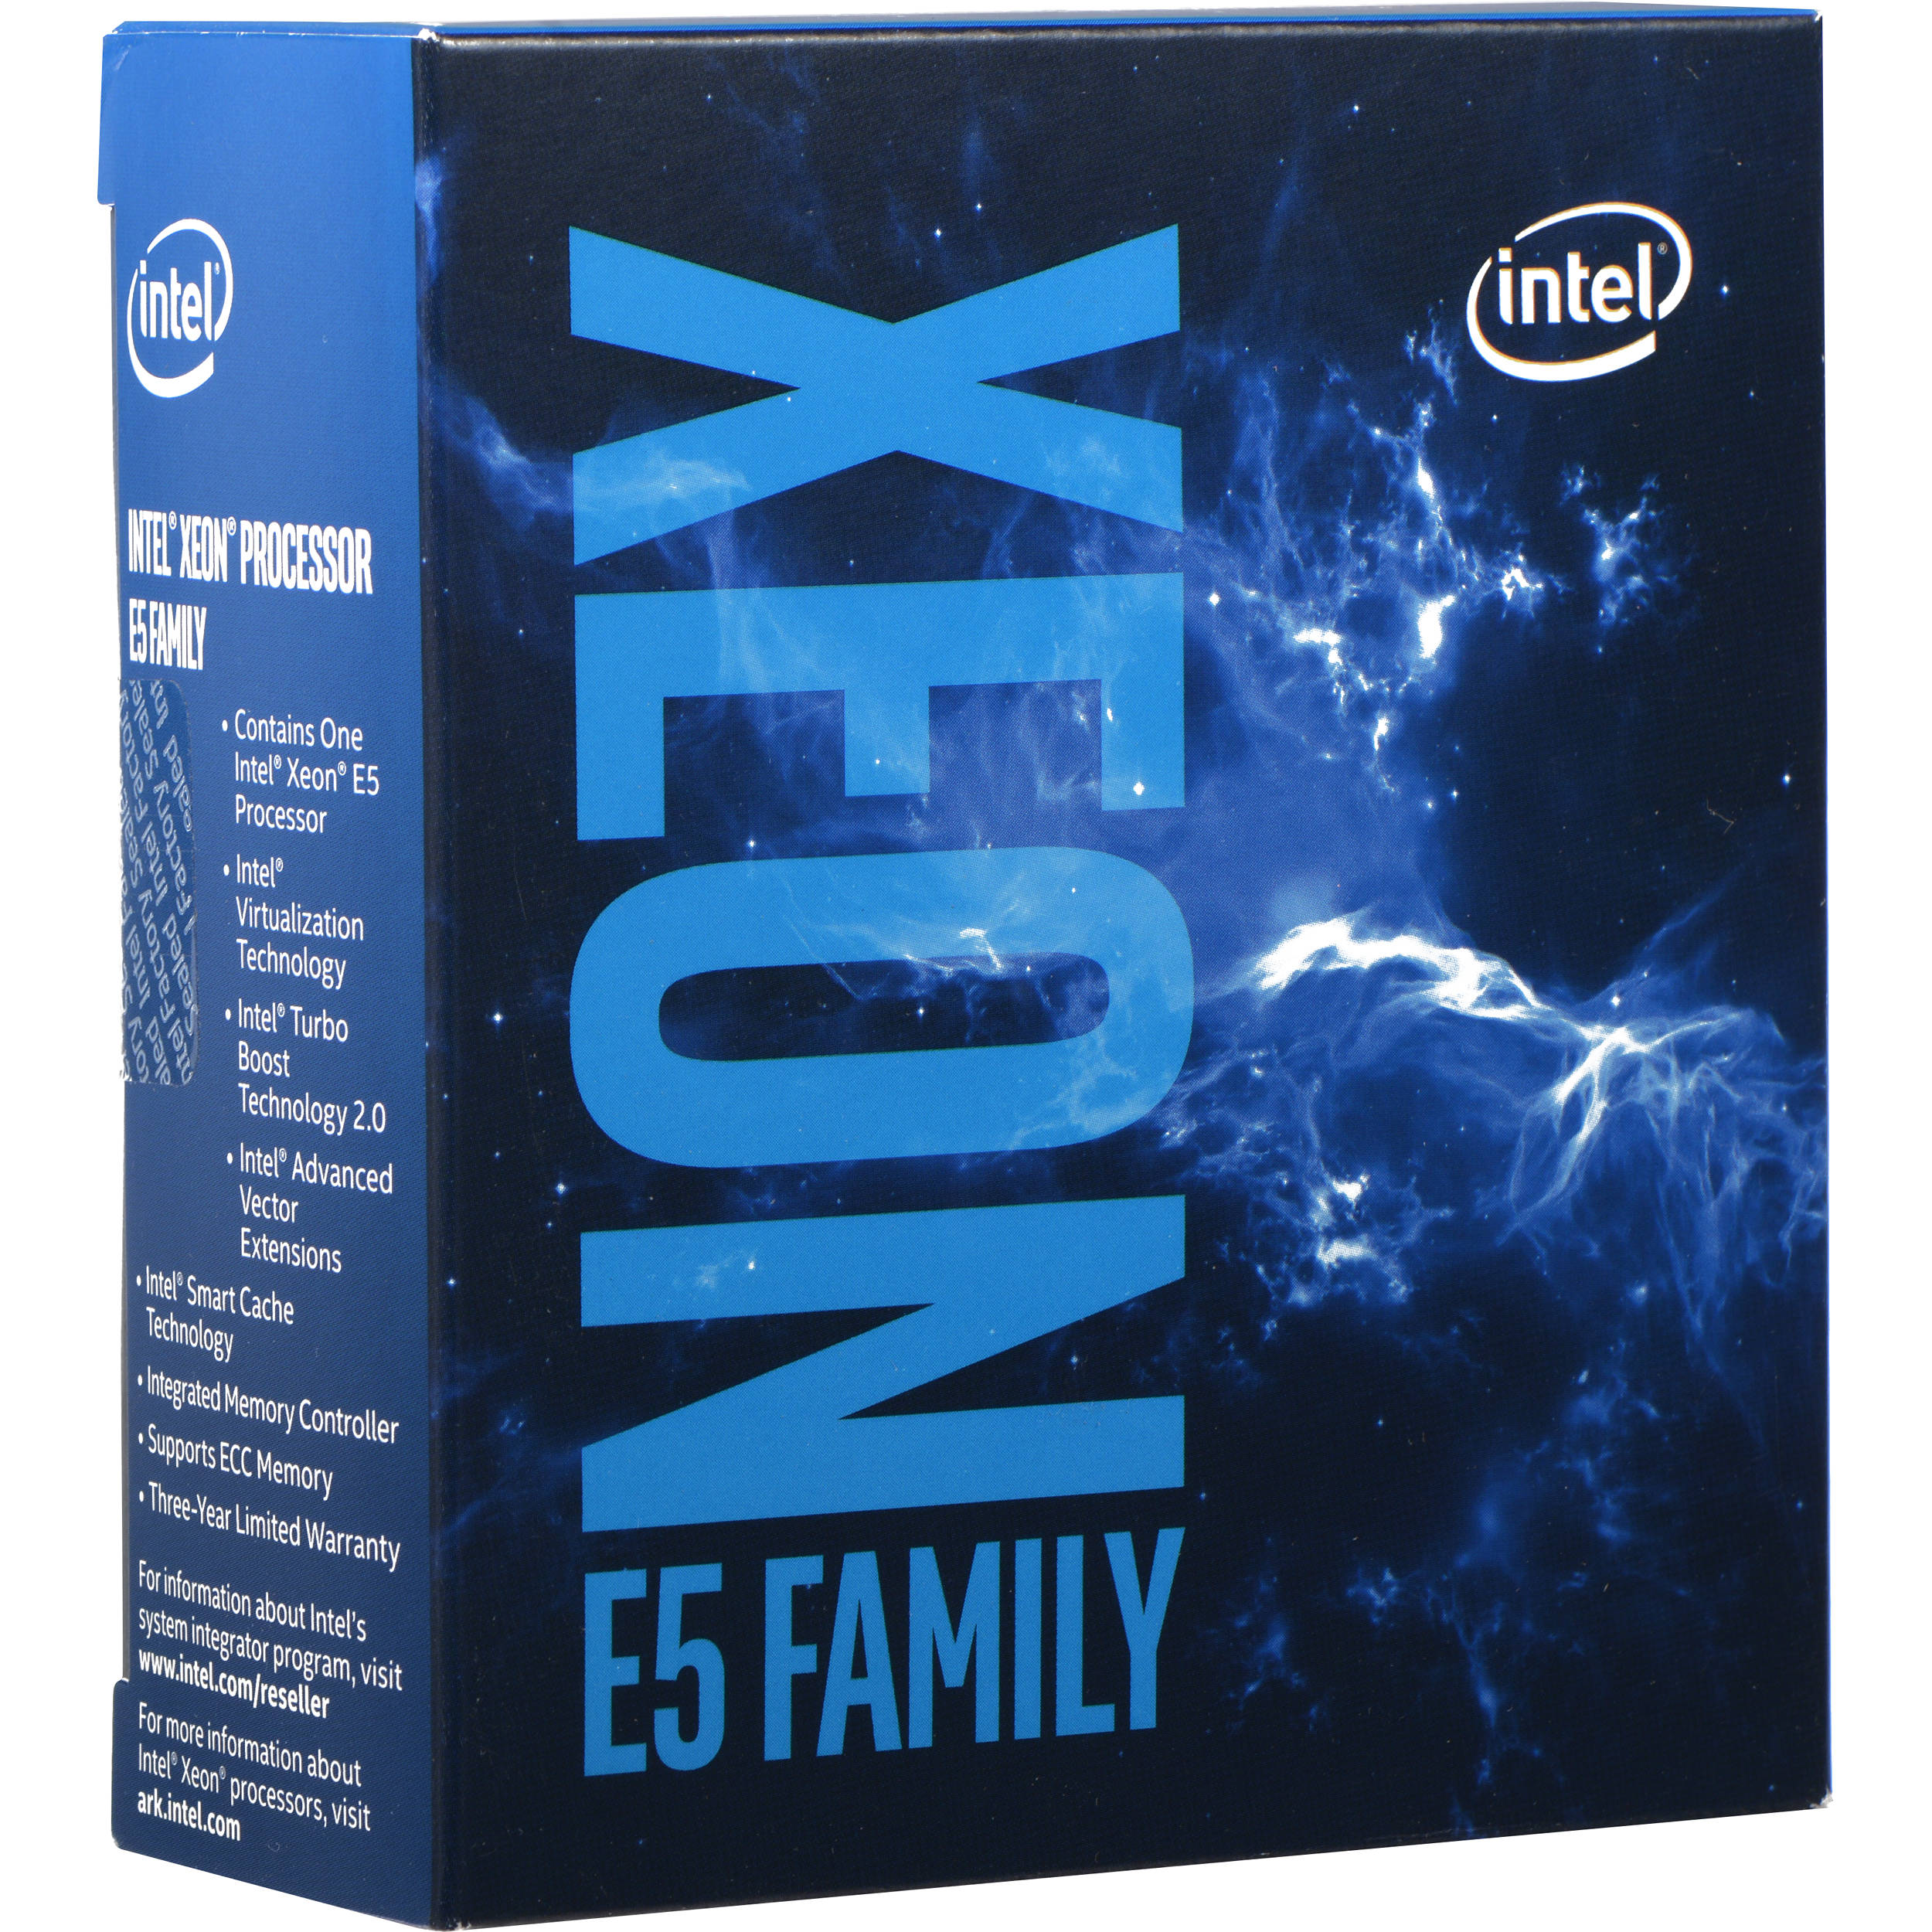 Xeon E5-2678 V3